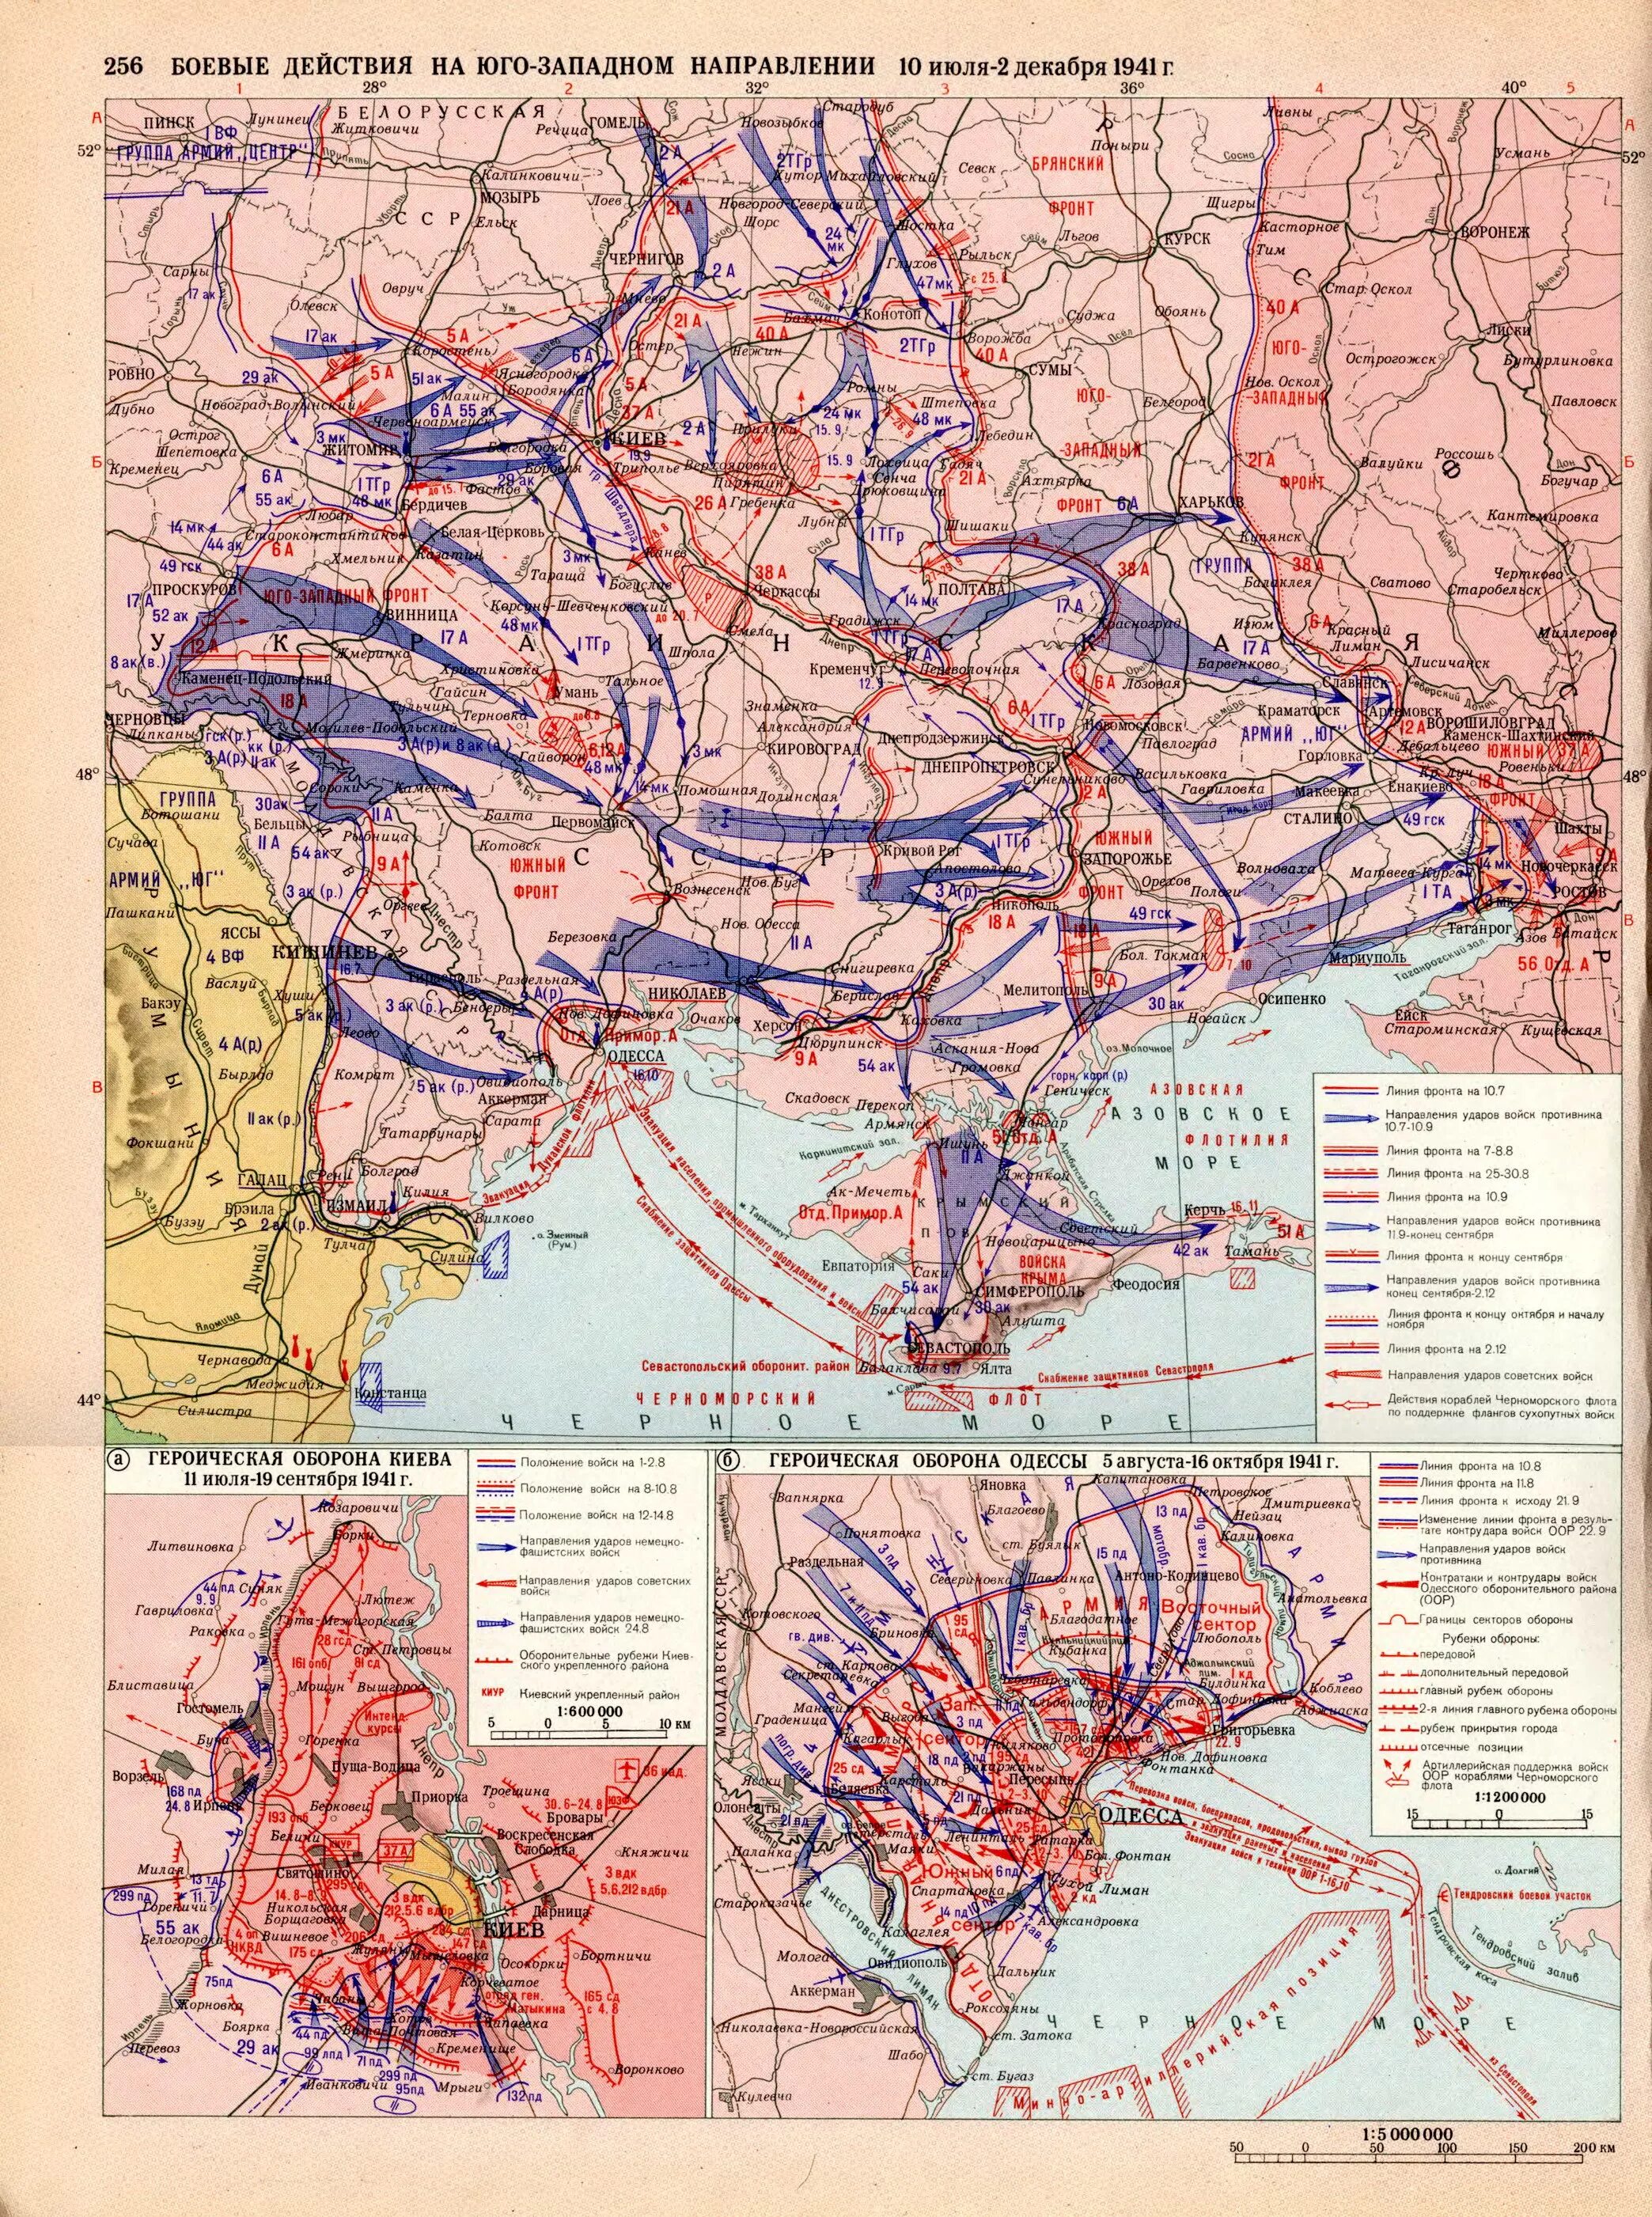 Карта боевых действий декабрь 1941. Южный фронт 1941 карта. Юго-Западный фронт в 1941 году карта. Фронт 1941 карта боевых действий. Западное направление украина